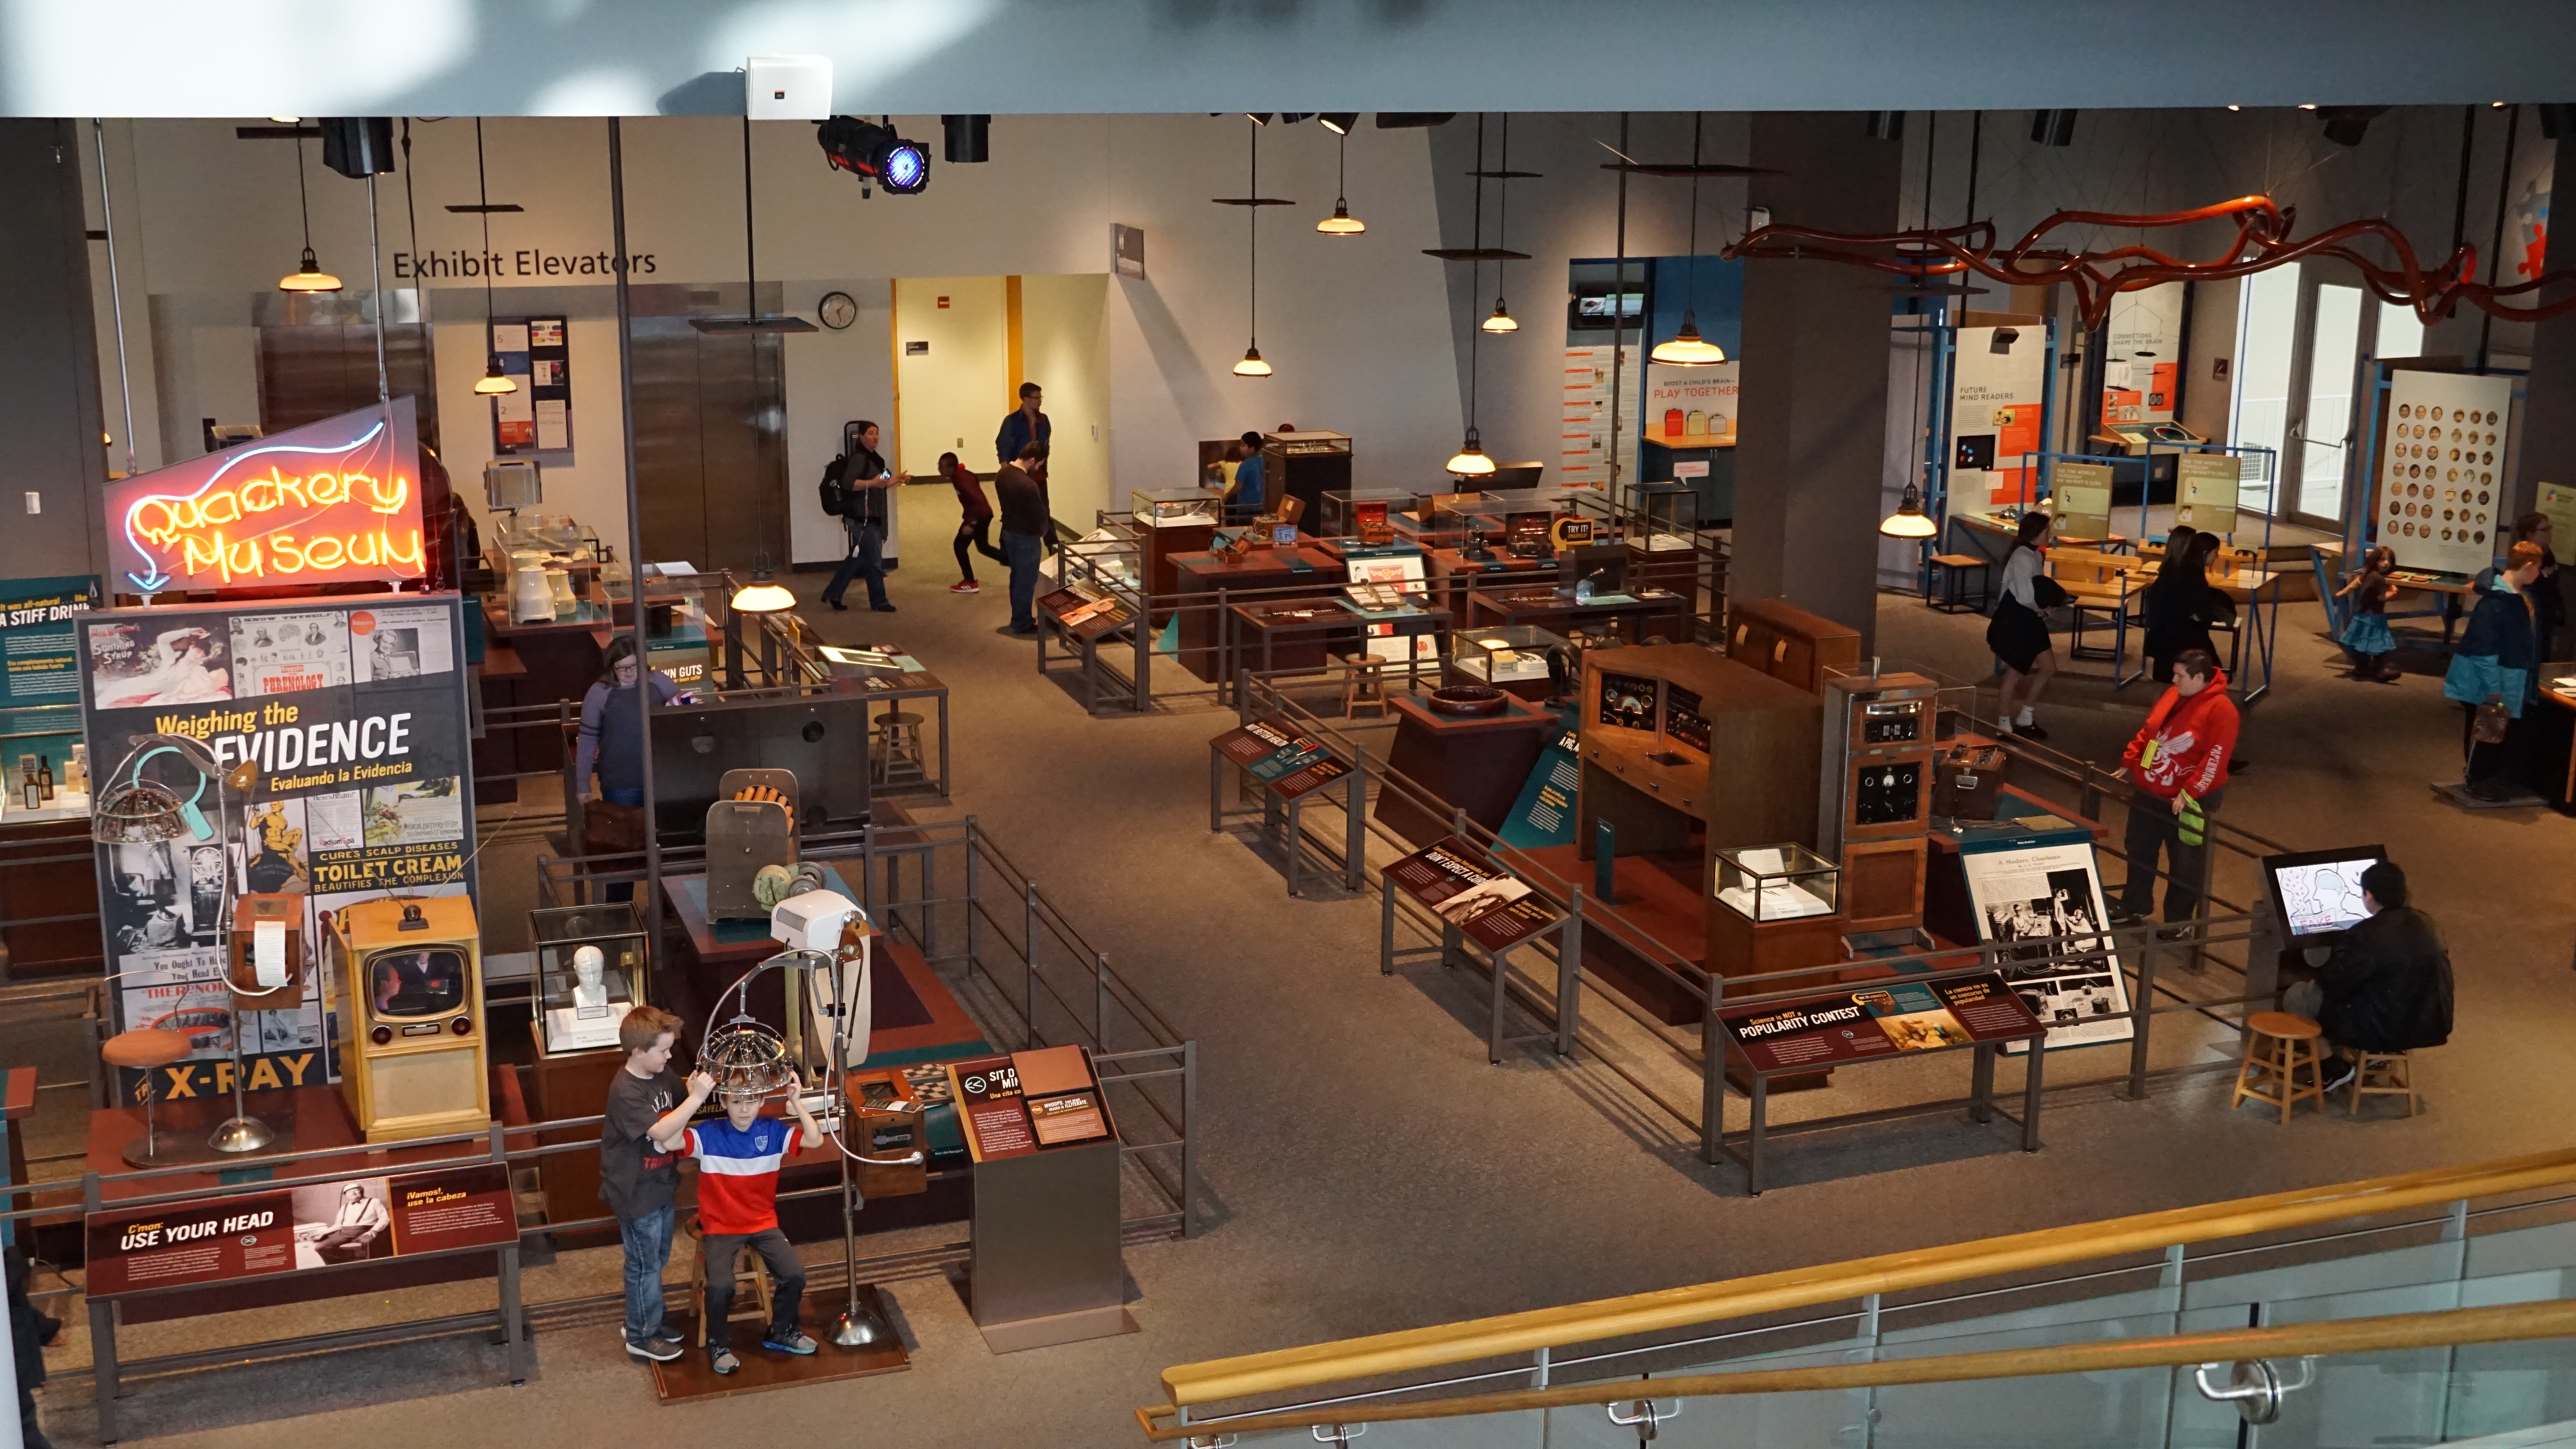 明尼苏达科学博物馆一层的“庸医博物馆”展厅（Quackery Museum）